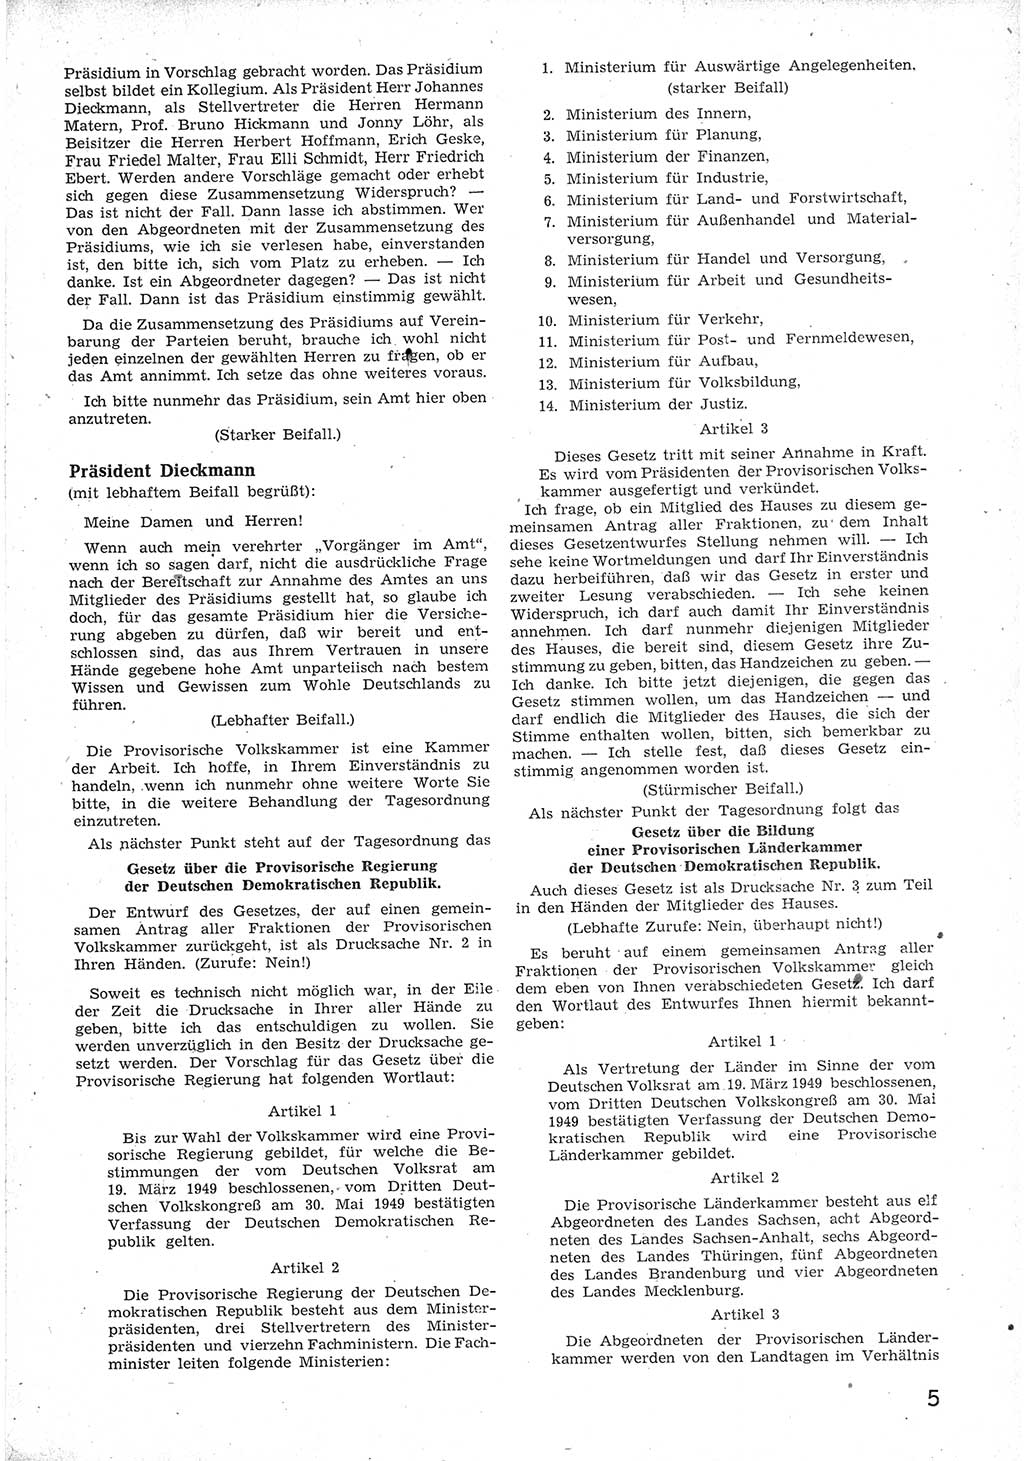 Provisorische Volkskammer (VK) der Deutschen Demokratischen Republik (DDR) 1949-1950, Dokument 17 (Prov. VK DDR 1949-1950, Dok. 17)